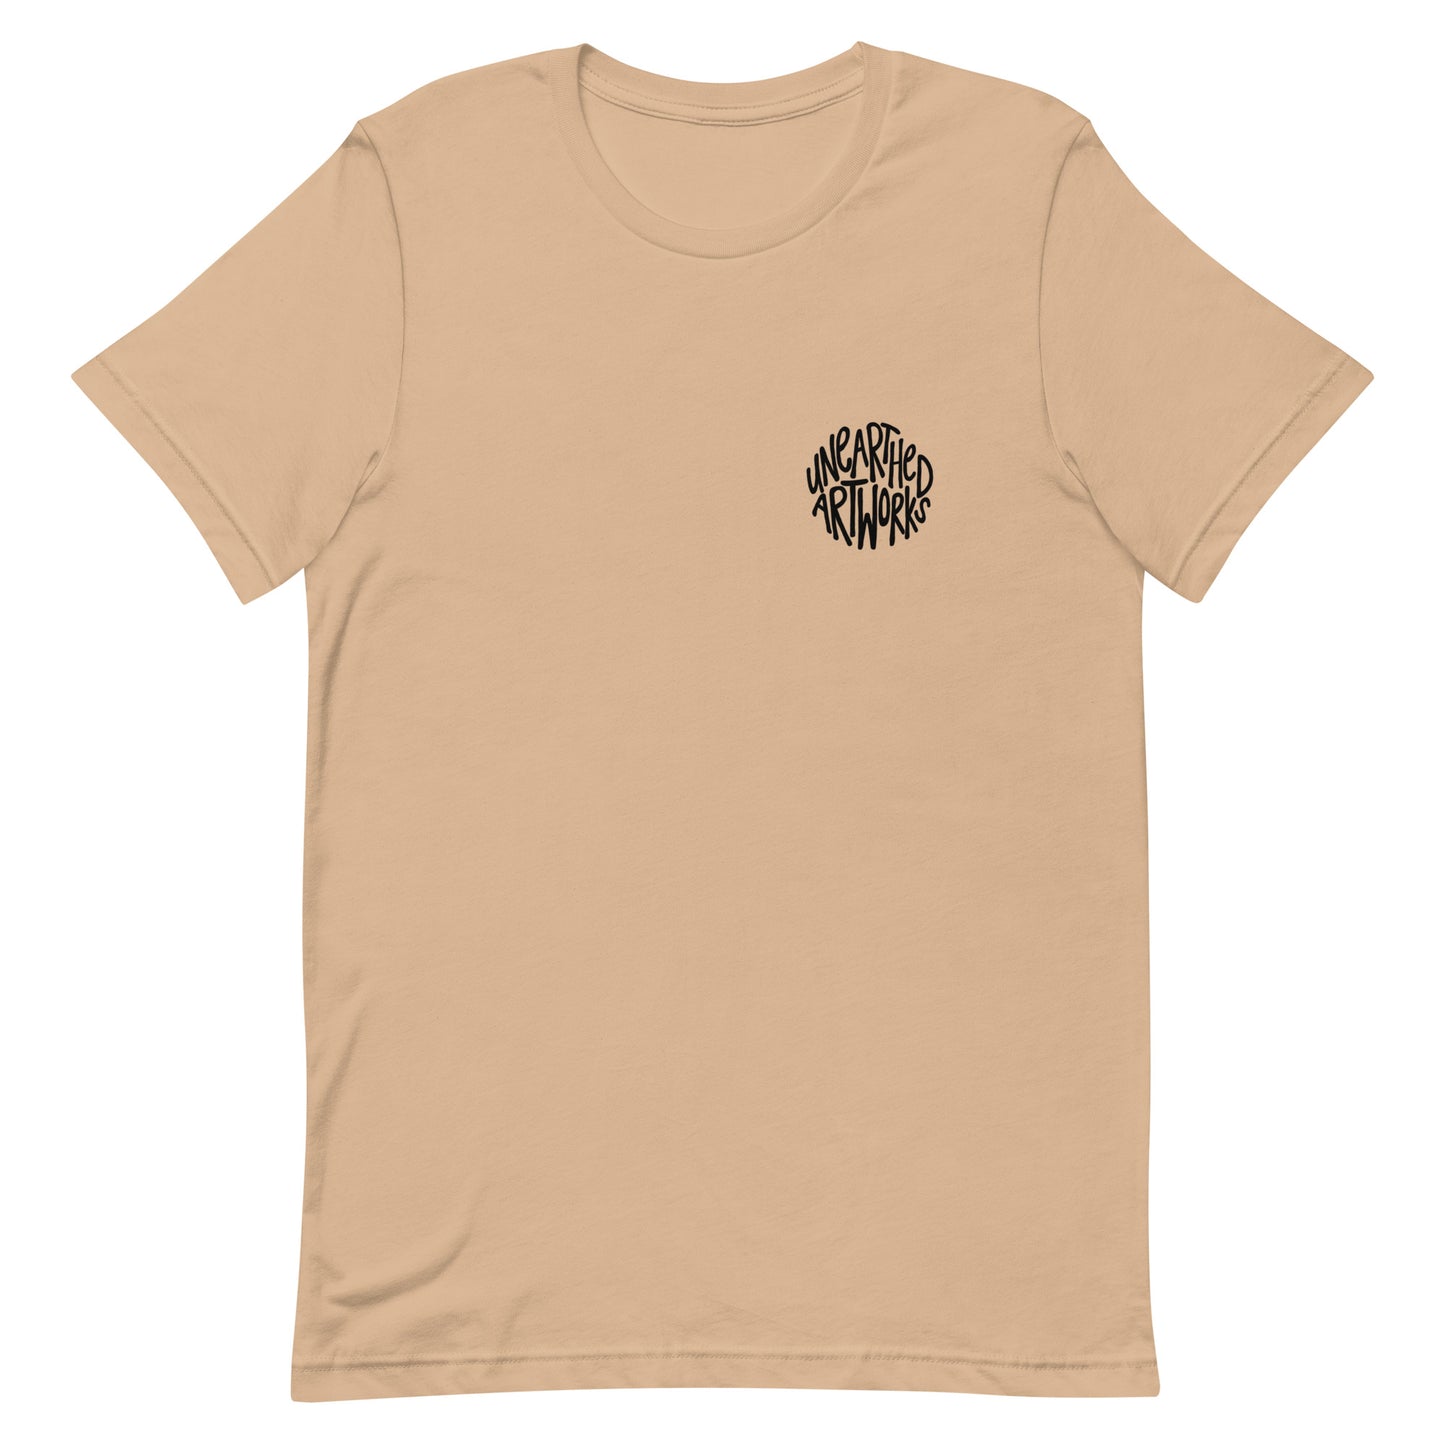 bishop landscape t-shirt (design on back)